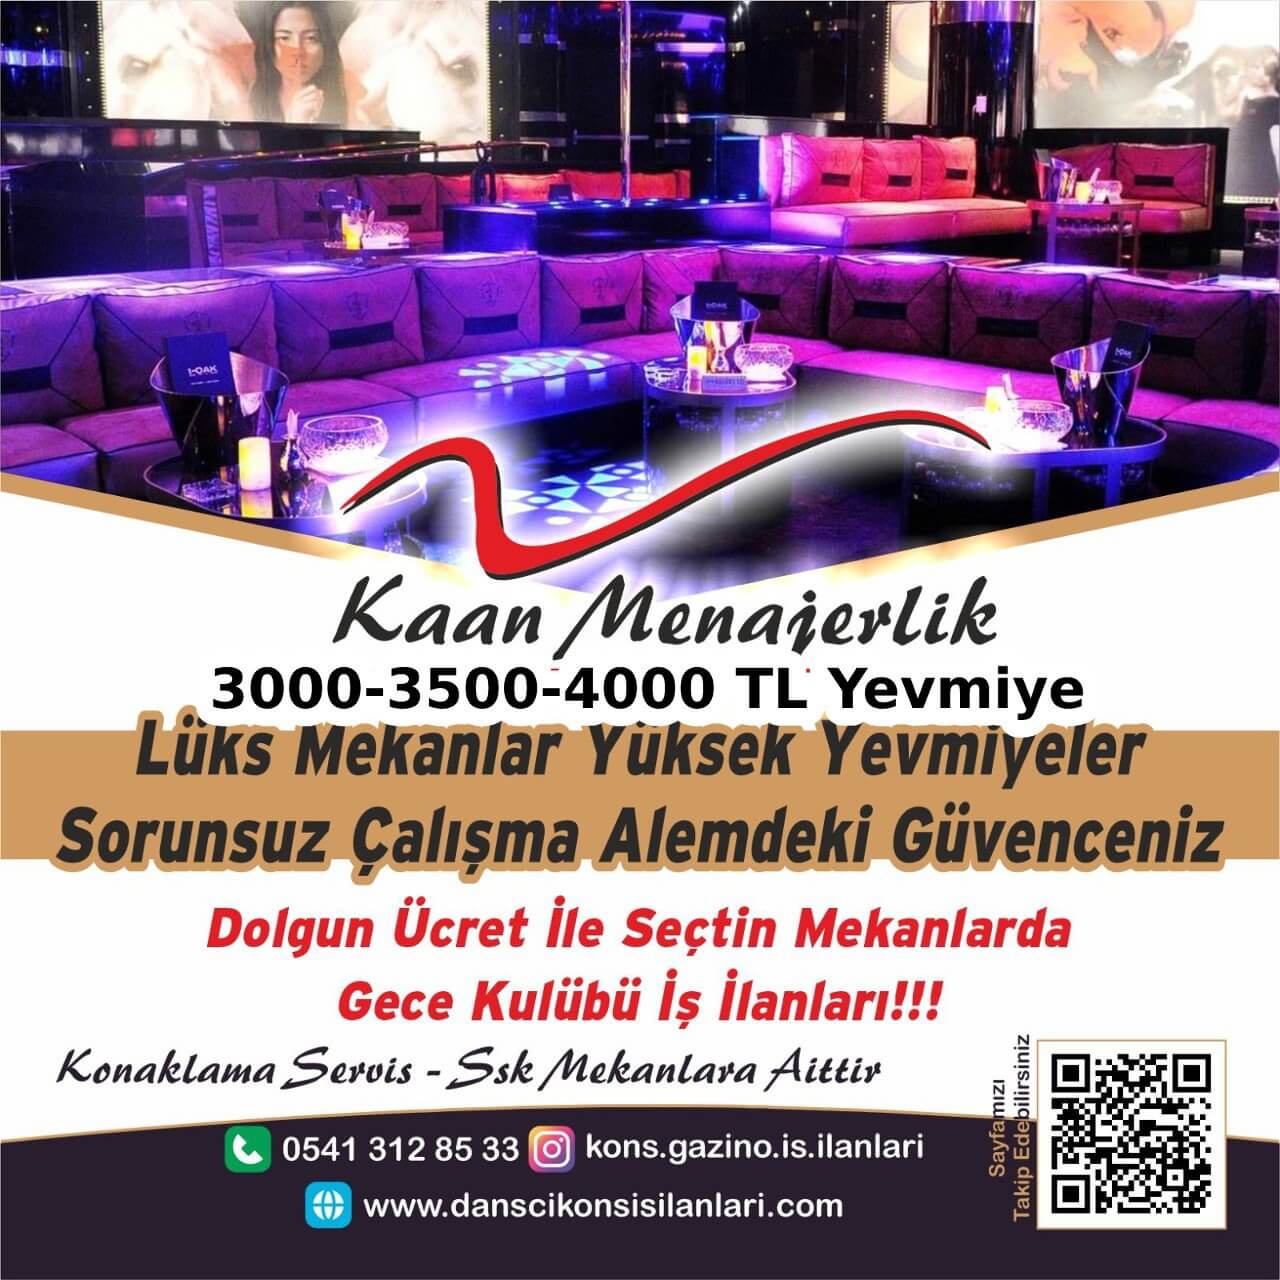 Trabzon kons iş ilanları